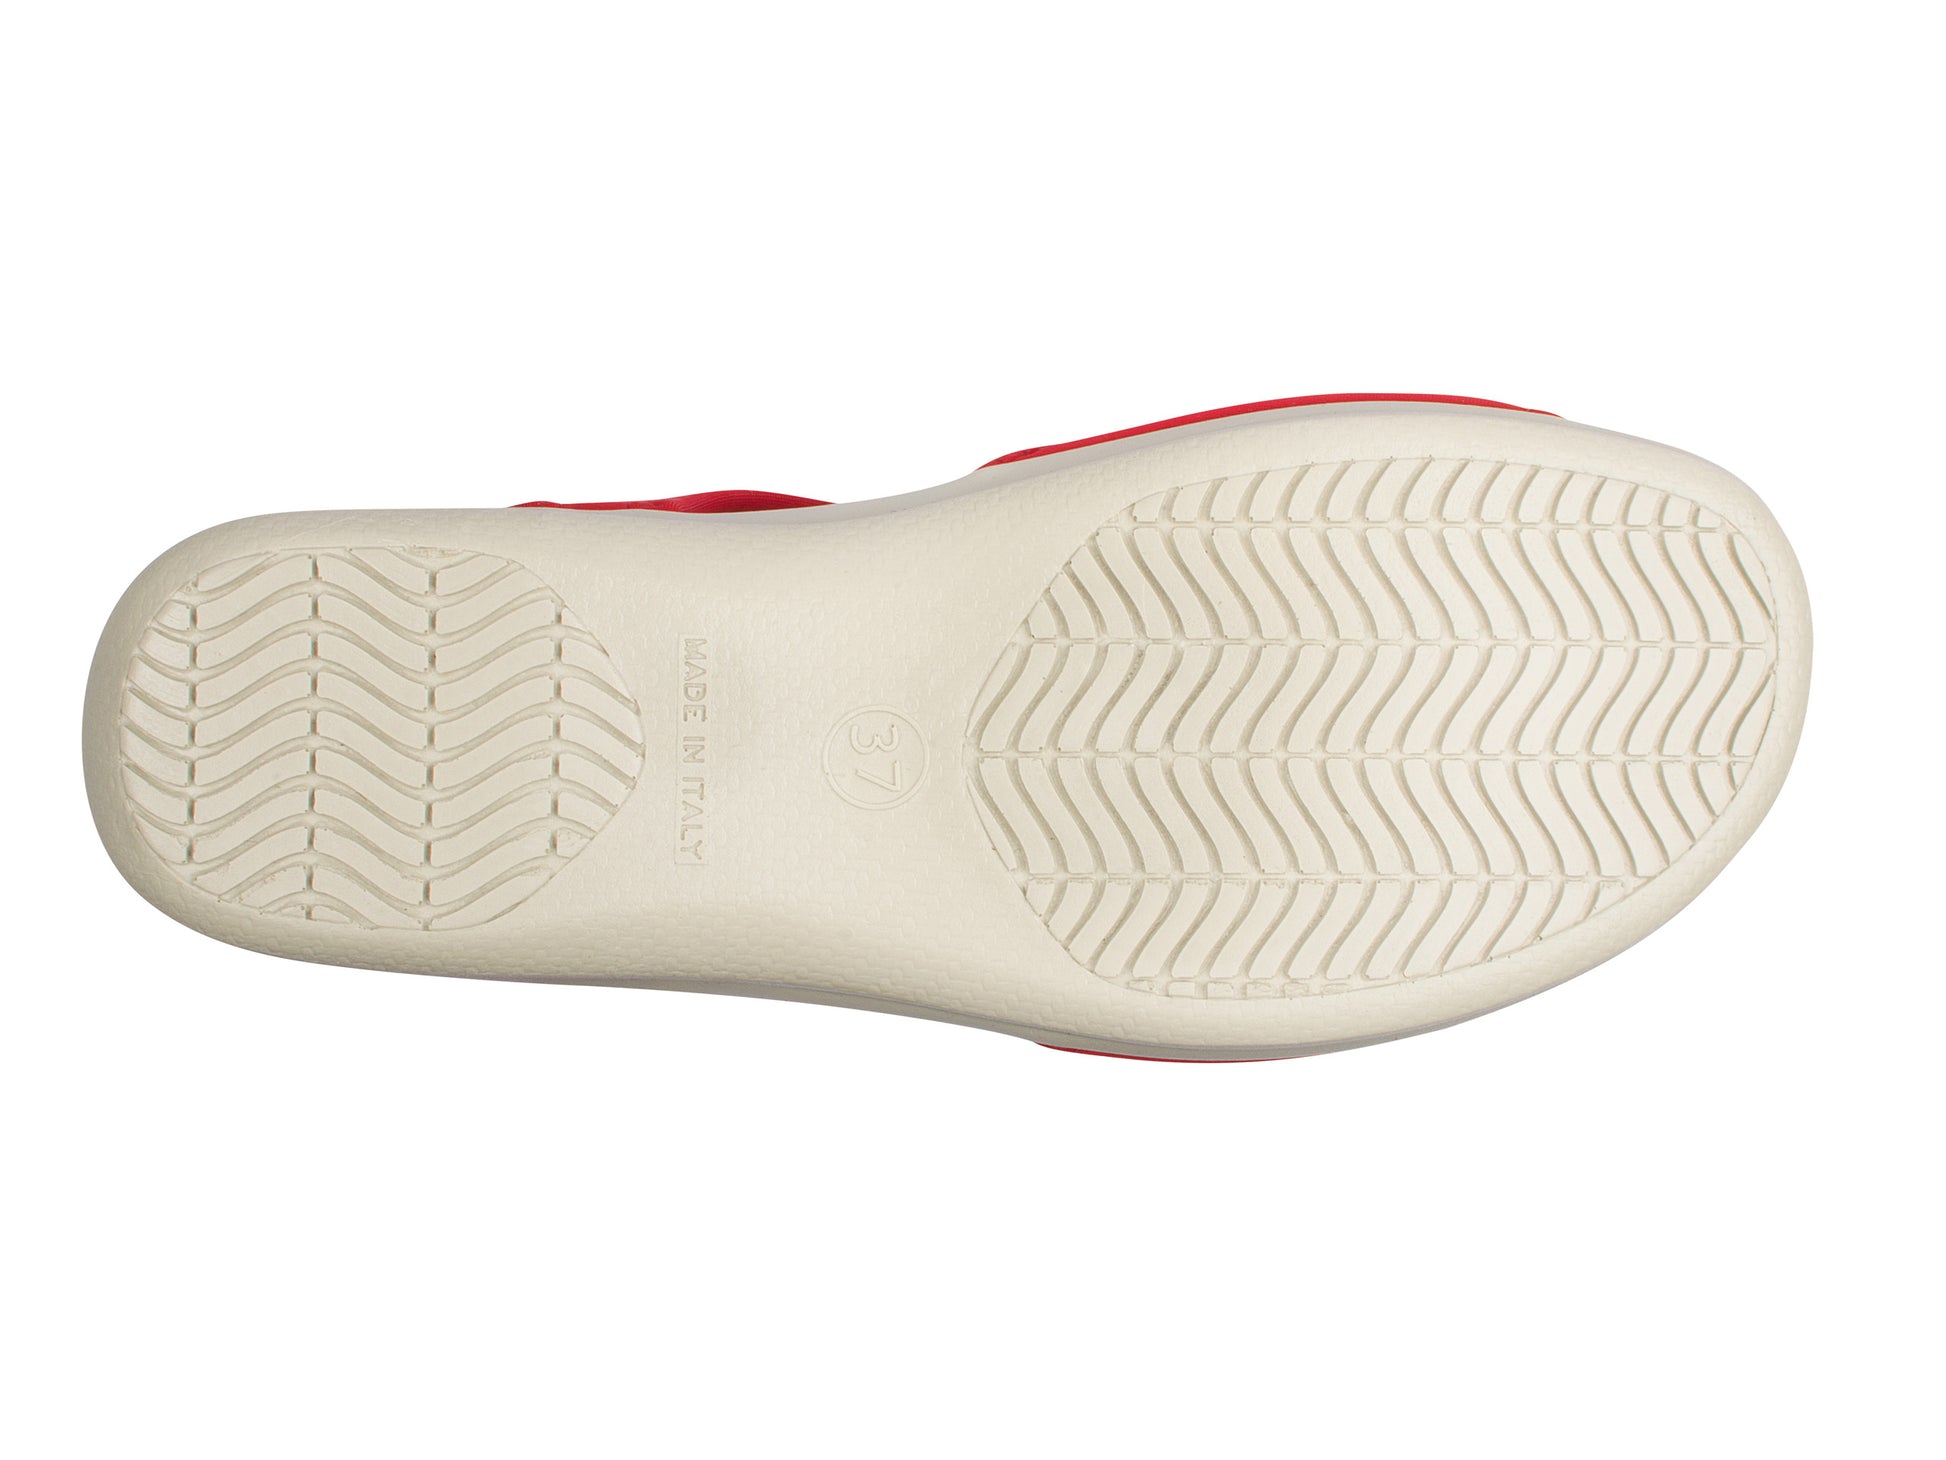 Die Sohle der Damen Stretch Sandalette Modell Stretch 05 von Aerosoft in der Farbe rot